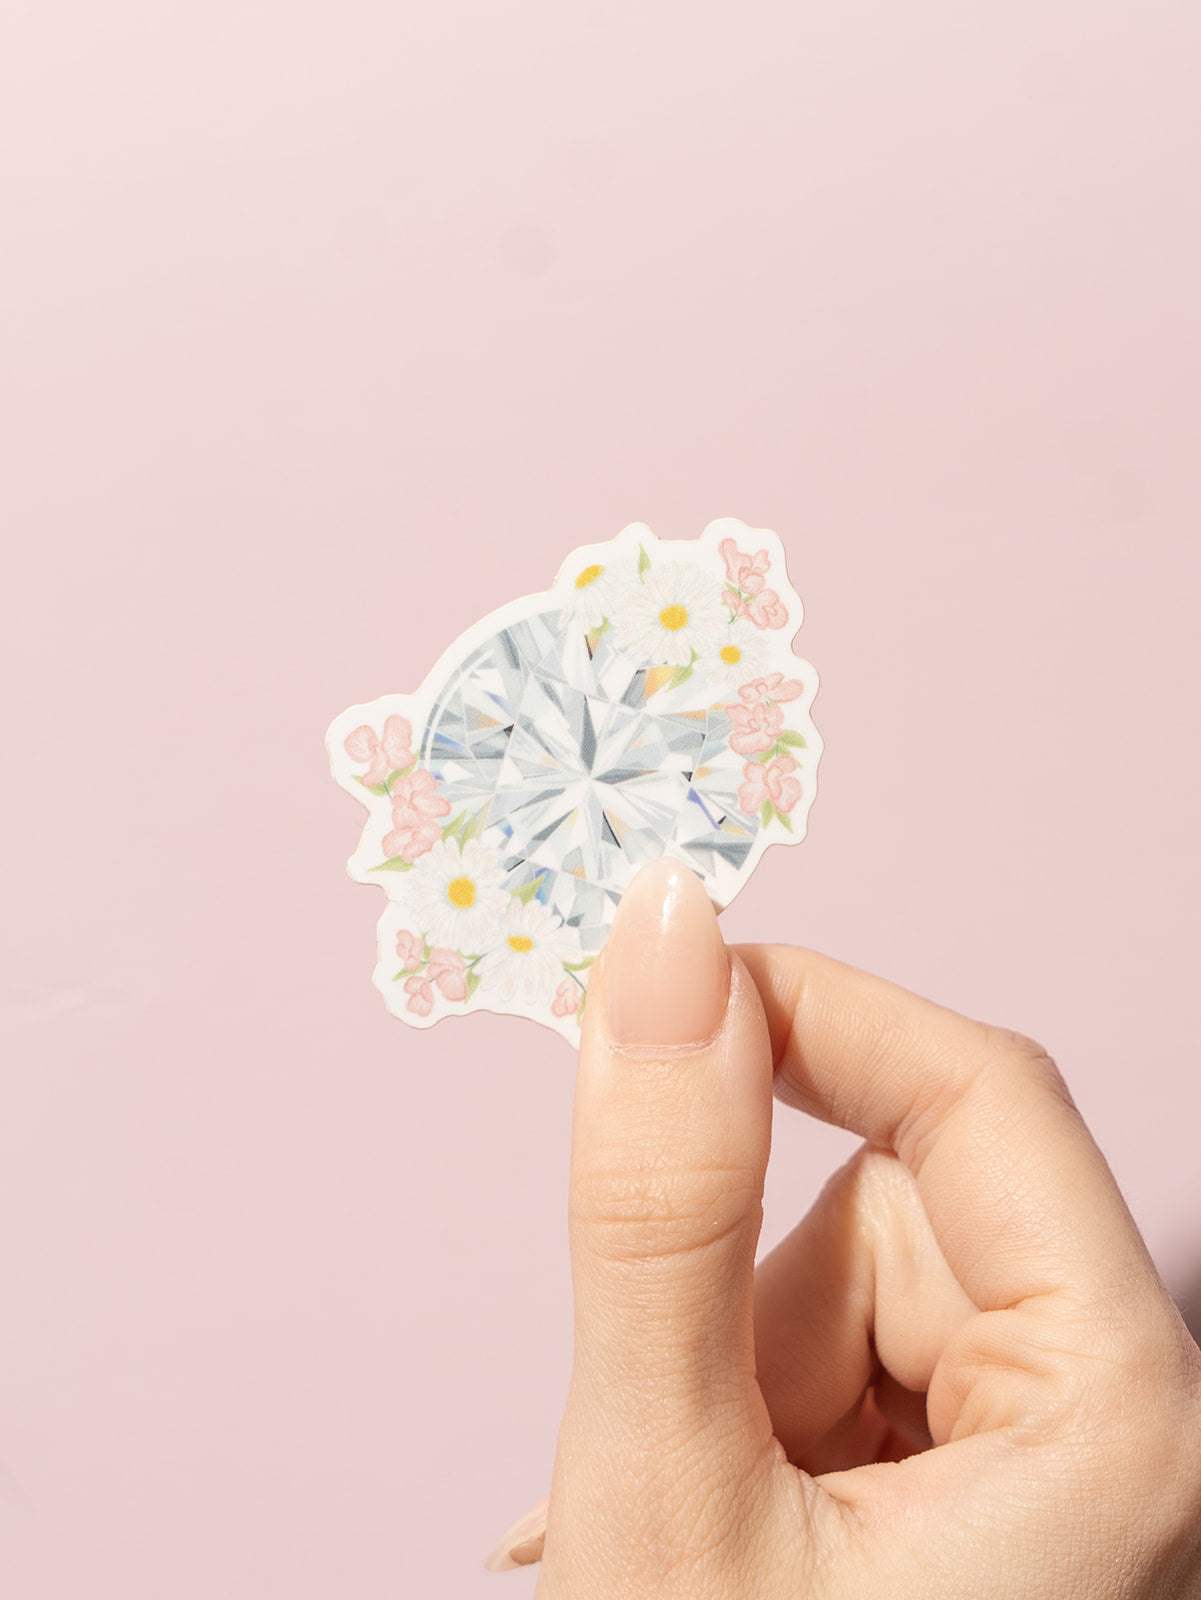 Diamond Floral Gemstone Sticker